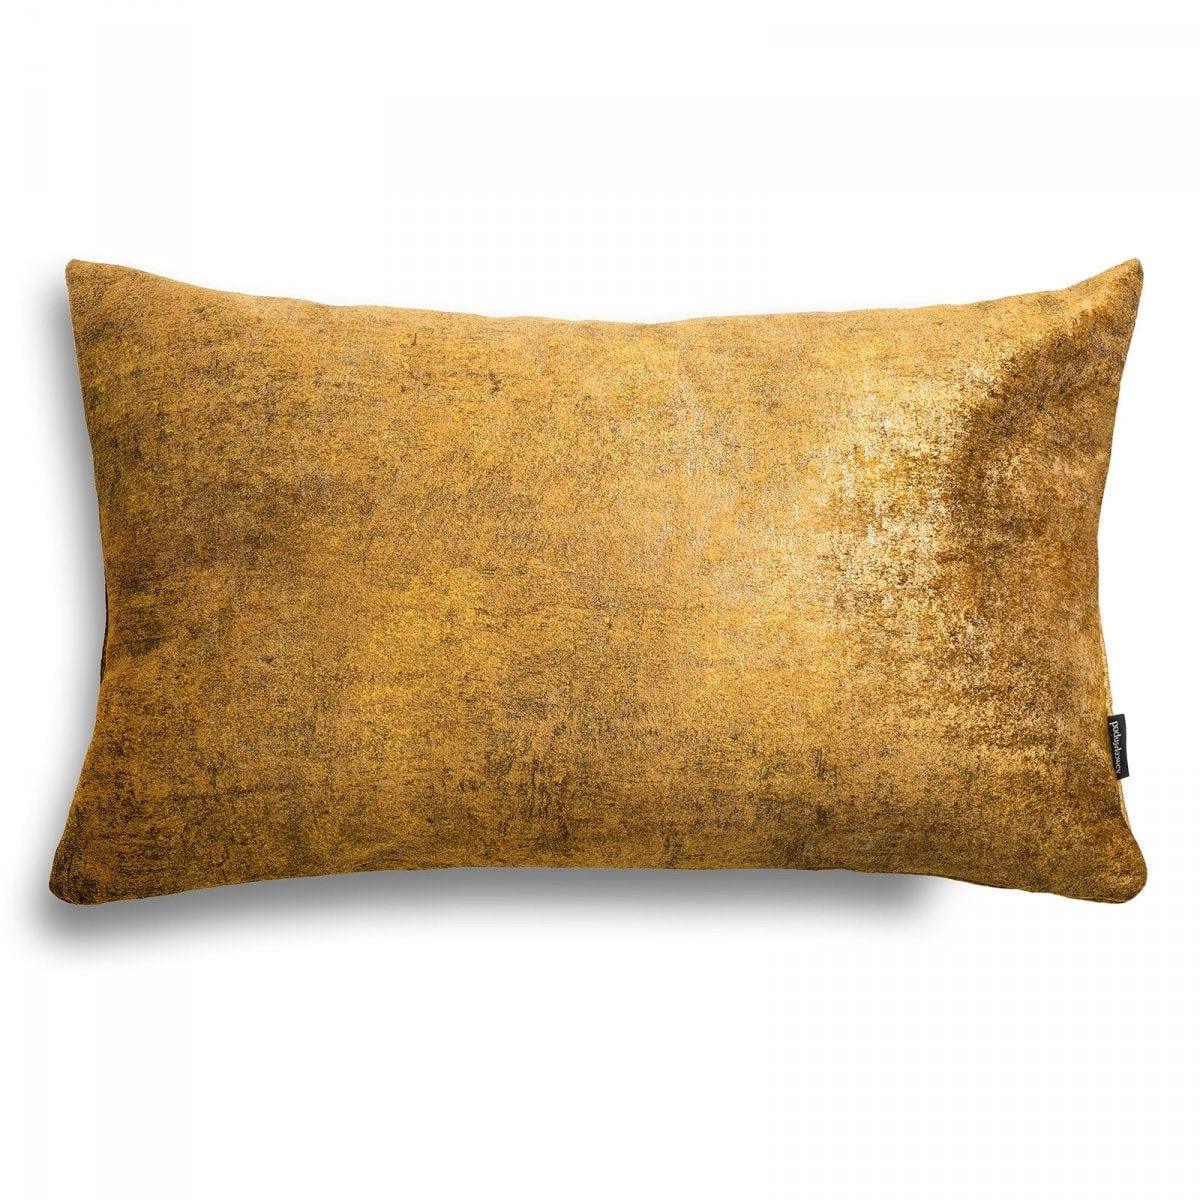 Stone złota poduszka dekoracyjna 50x30, Poduszkowcy, Eye on Design